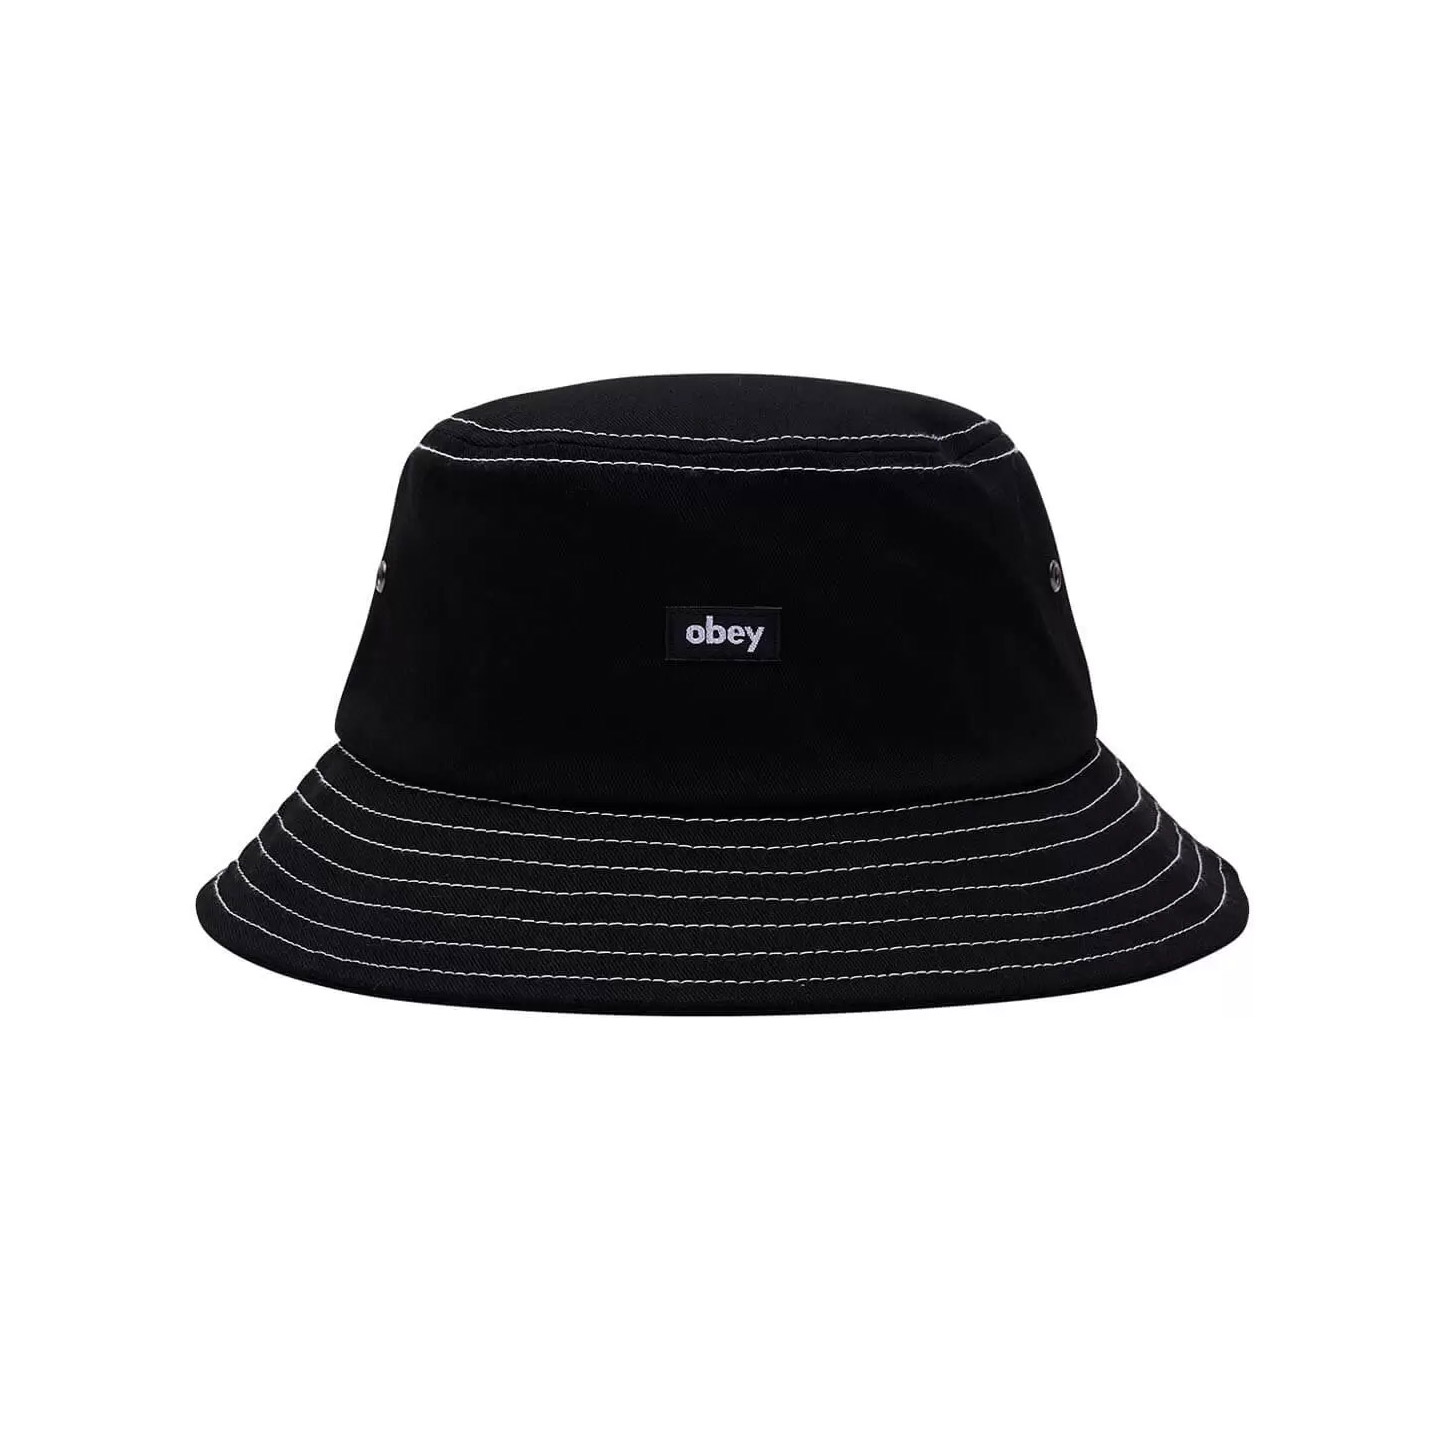 Obey Mac Bucket Hat - Black